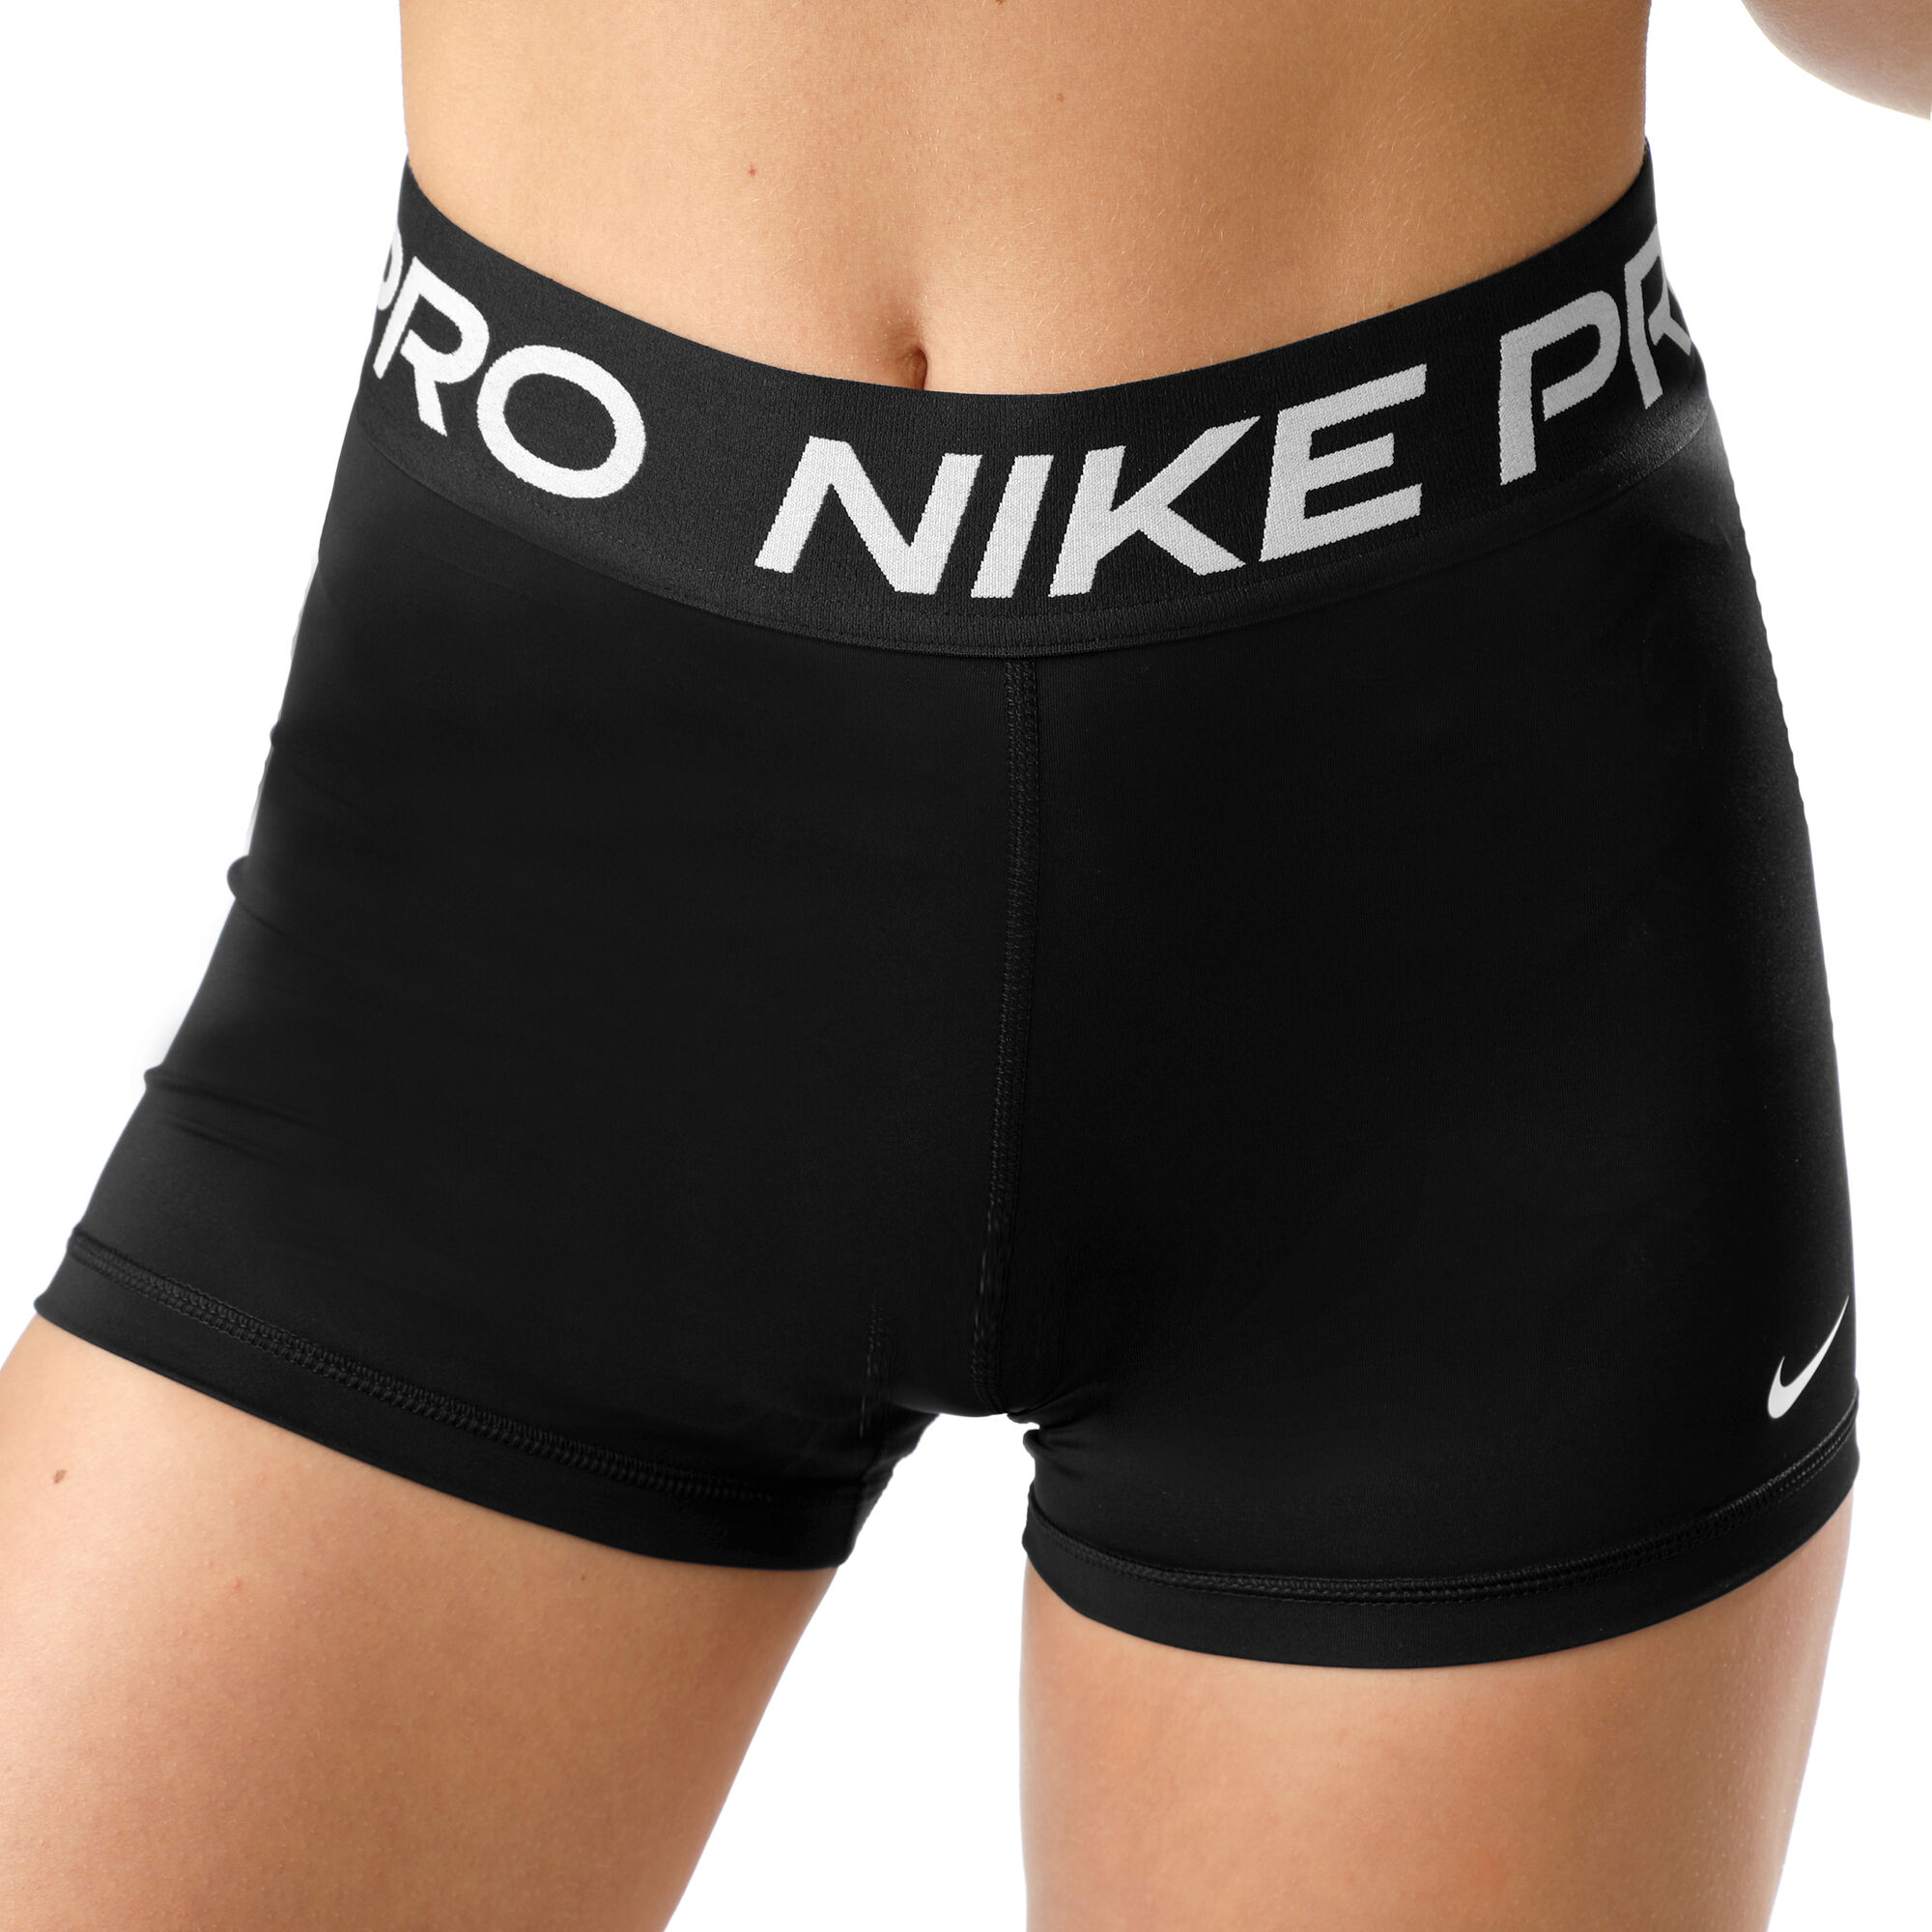 Nike Women Underwear Models, Nike Women Underwear Prices